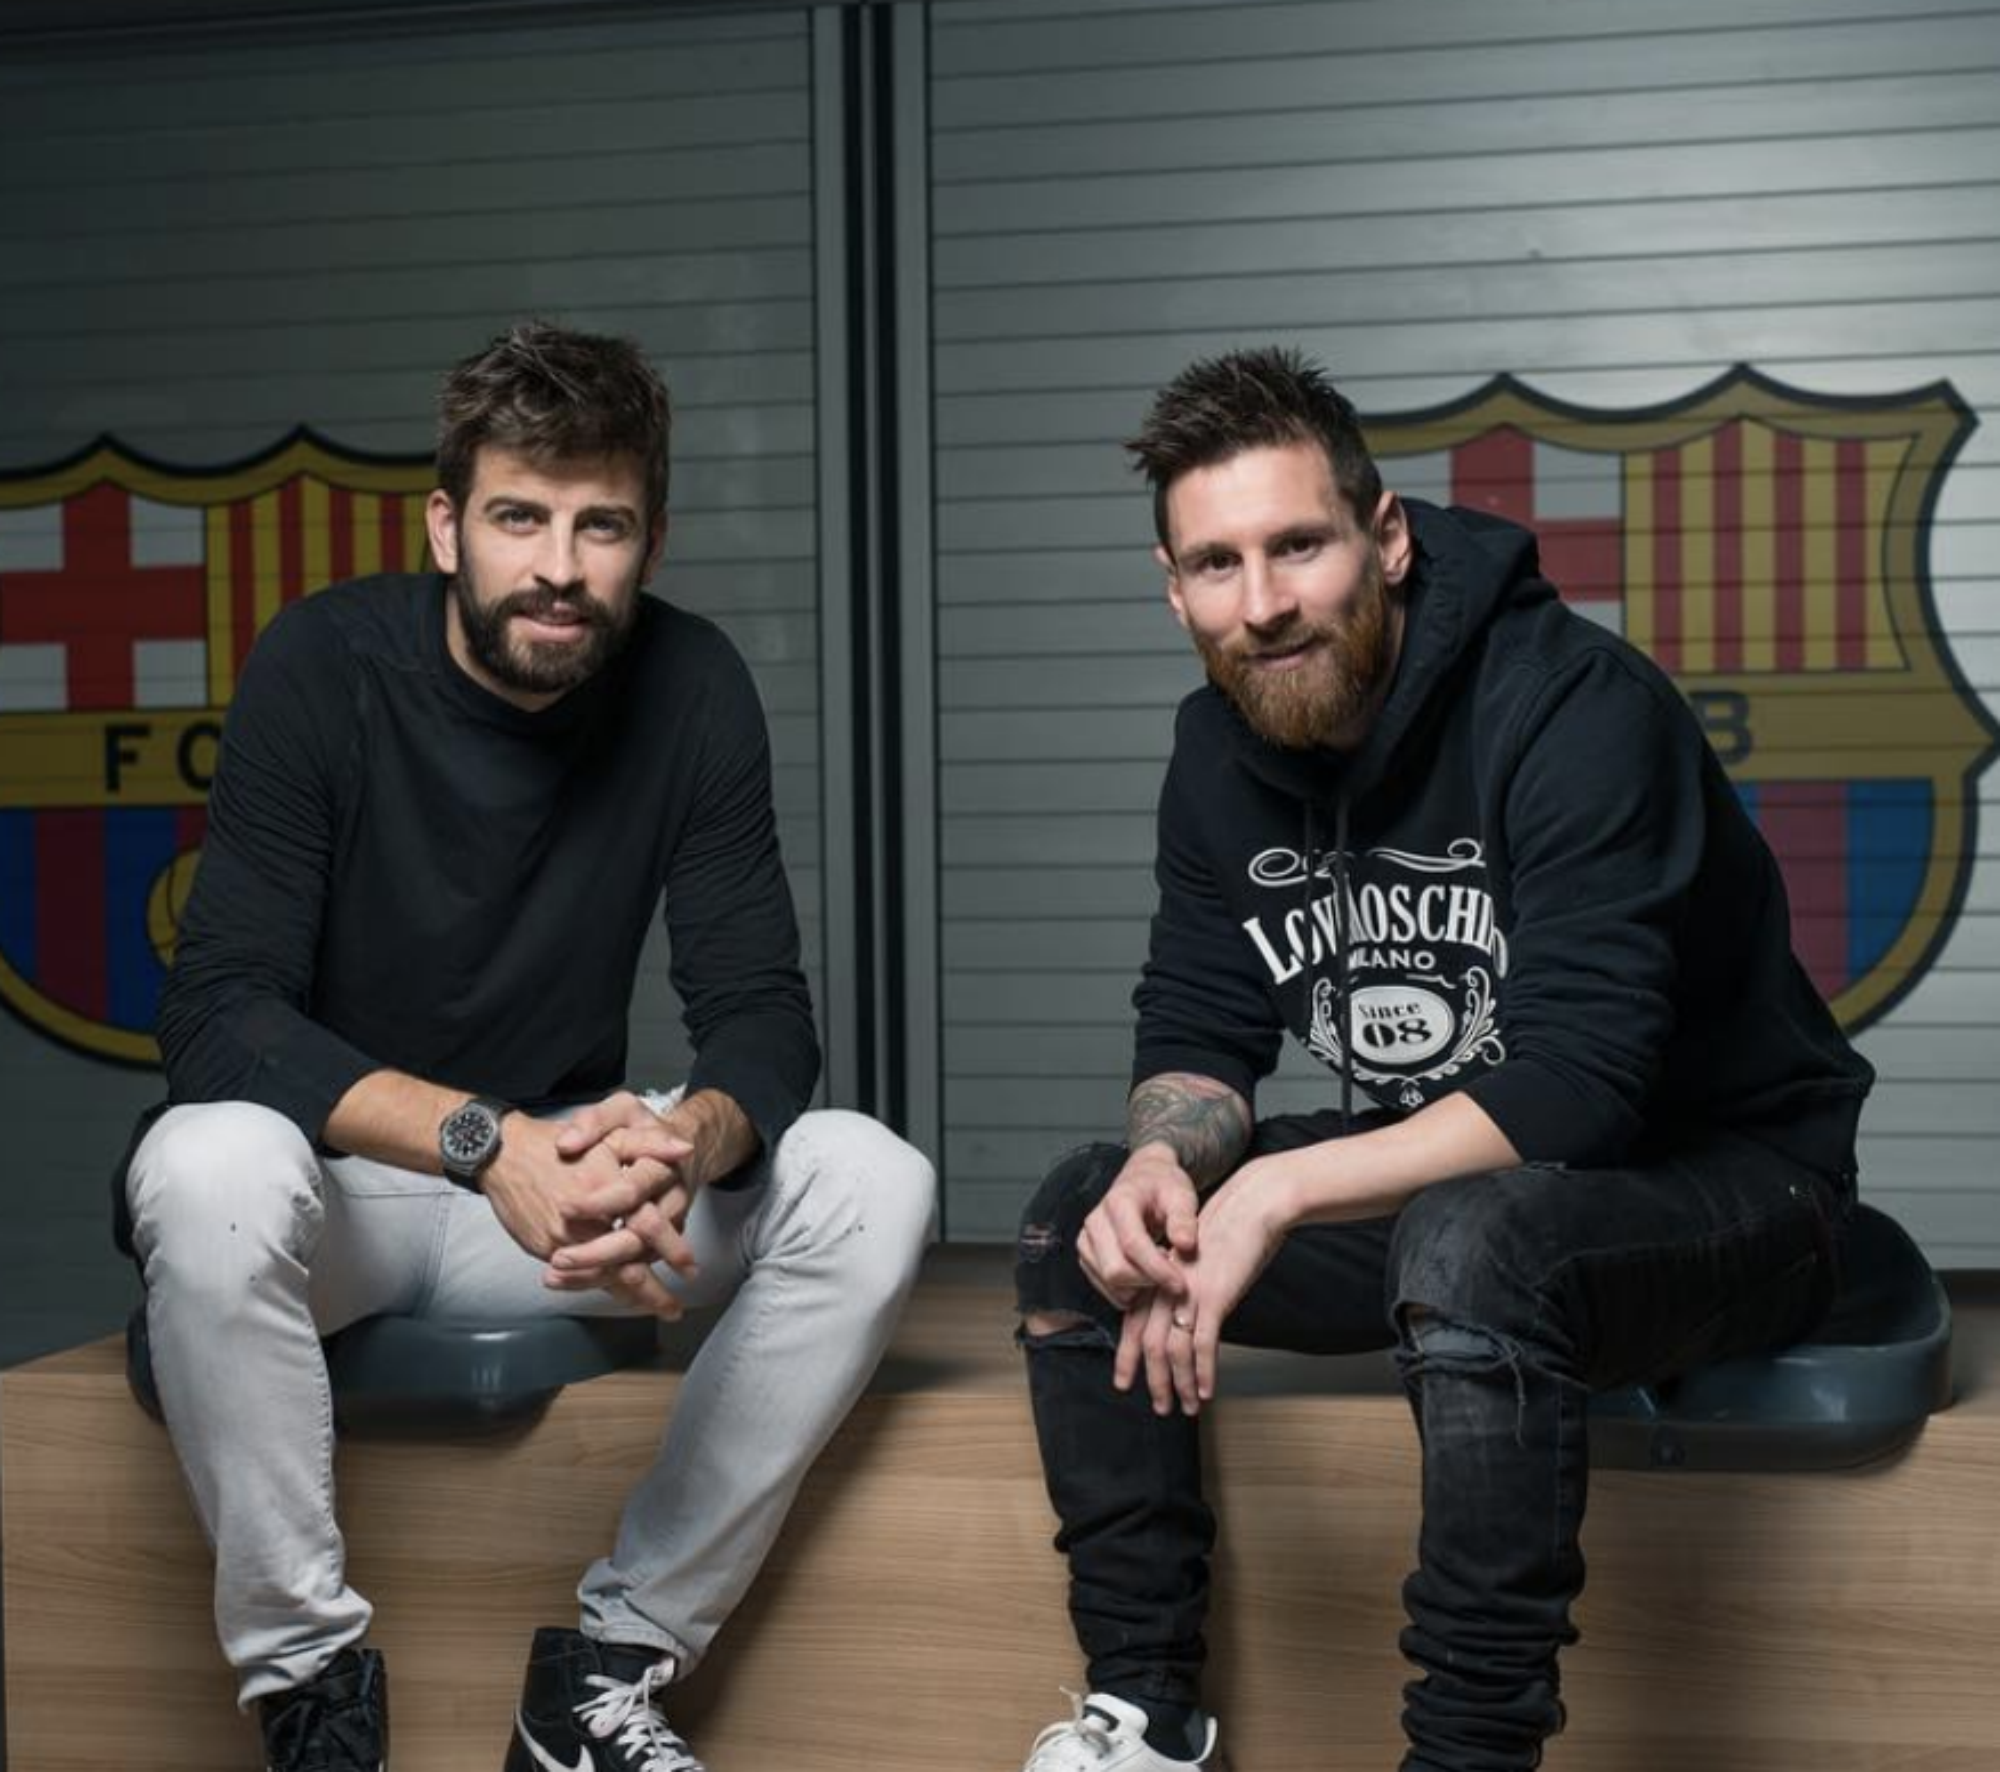 La societat entre Piqué i Messi segueix creixent